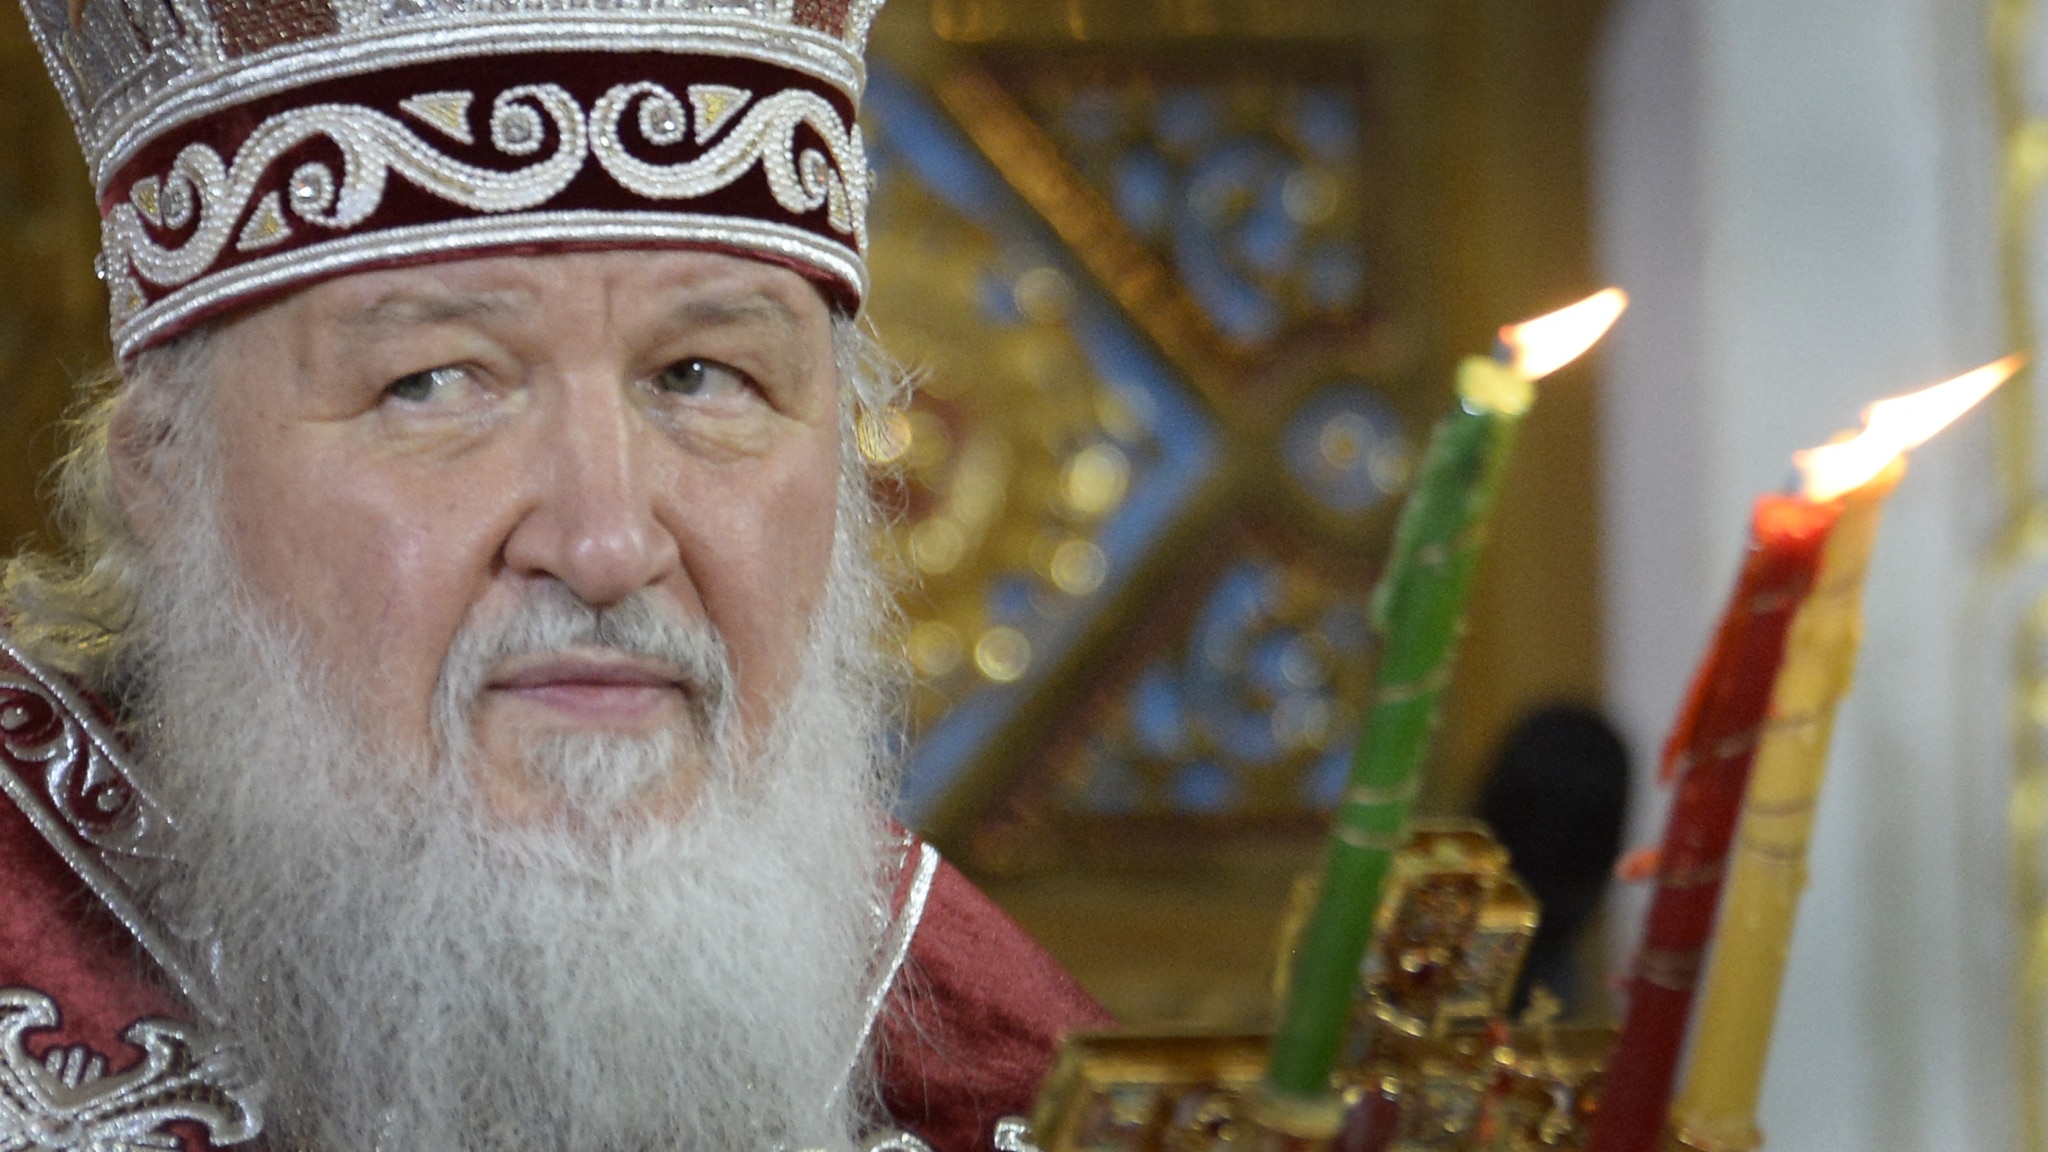 Kirill fa gli auguri Francesco per i dieci anni di pontificato mentre alimenta l'ostilità di Mosca verso il Papa